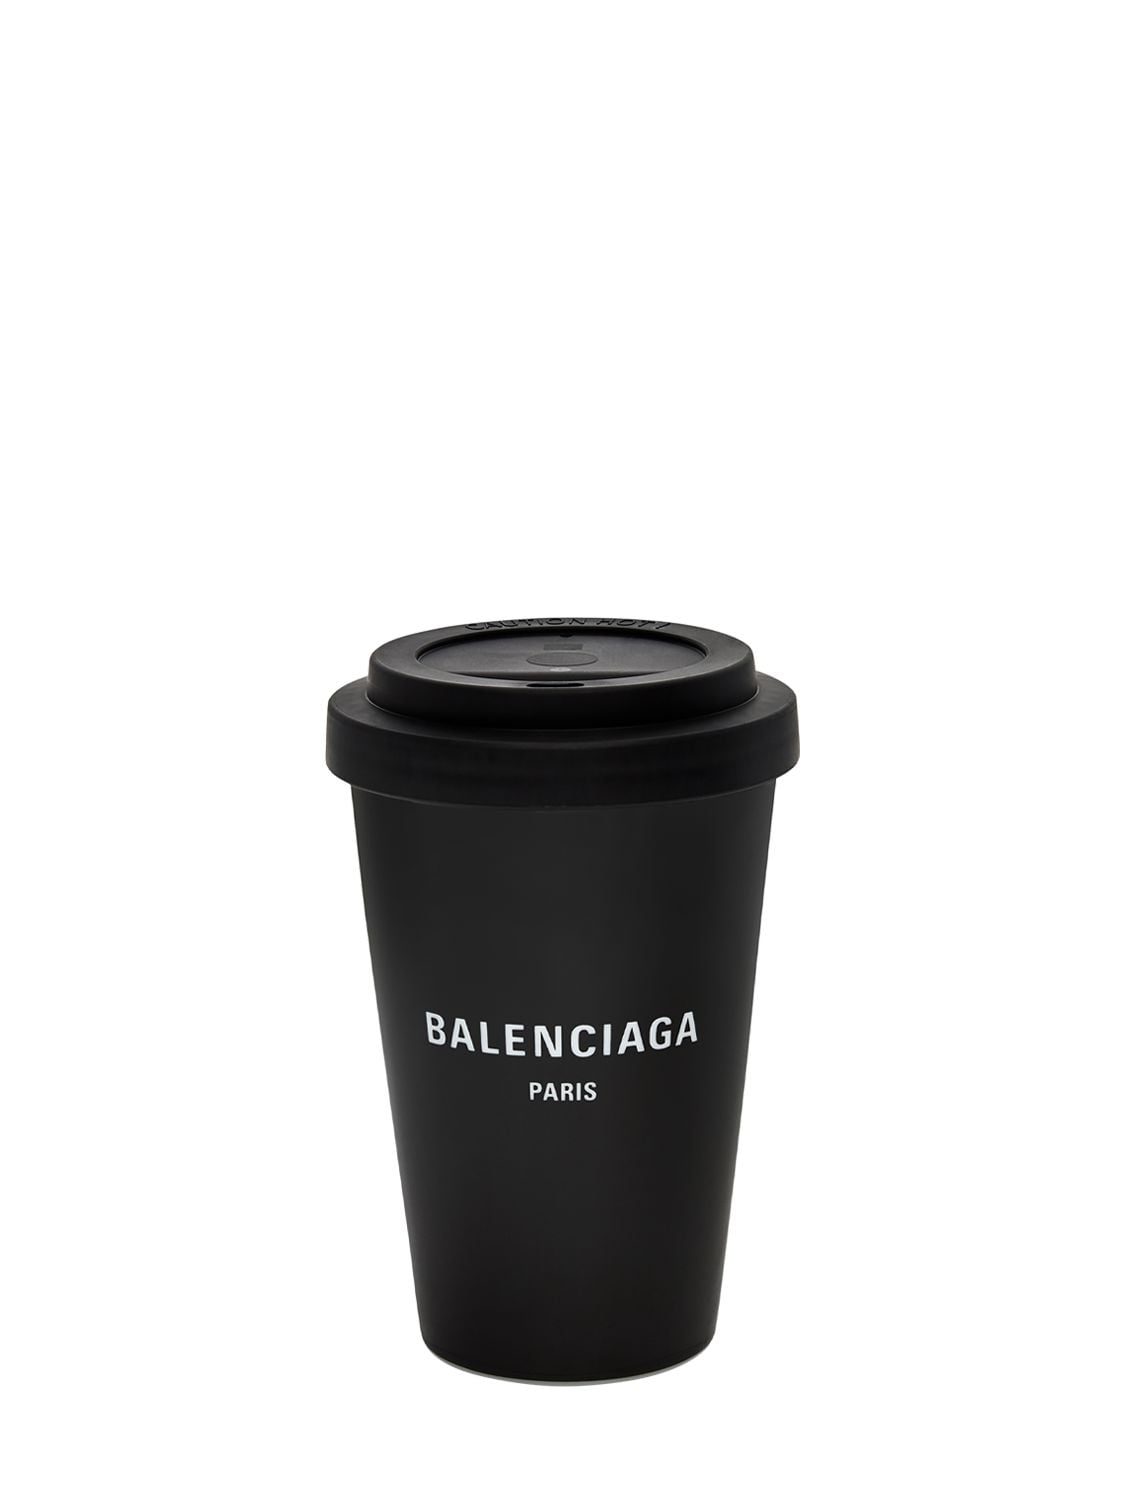 Balenciaga Paris陶瓷咖啡杯 In Black